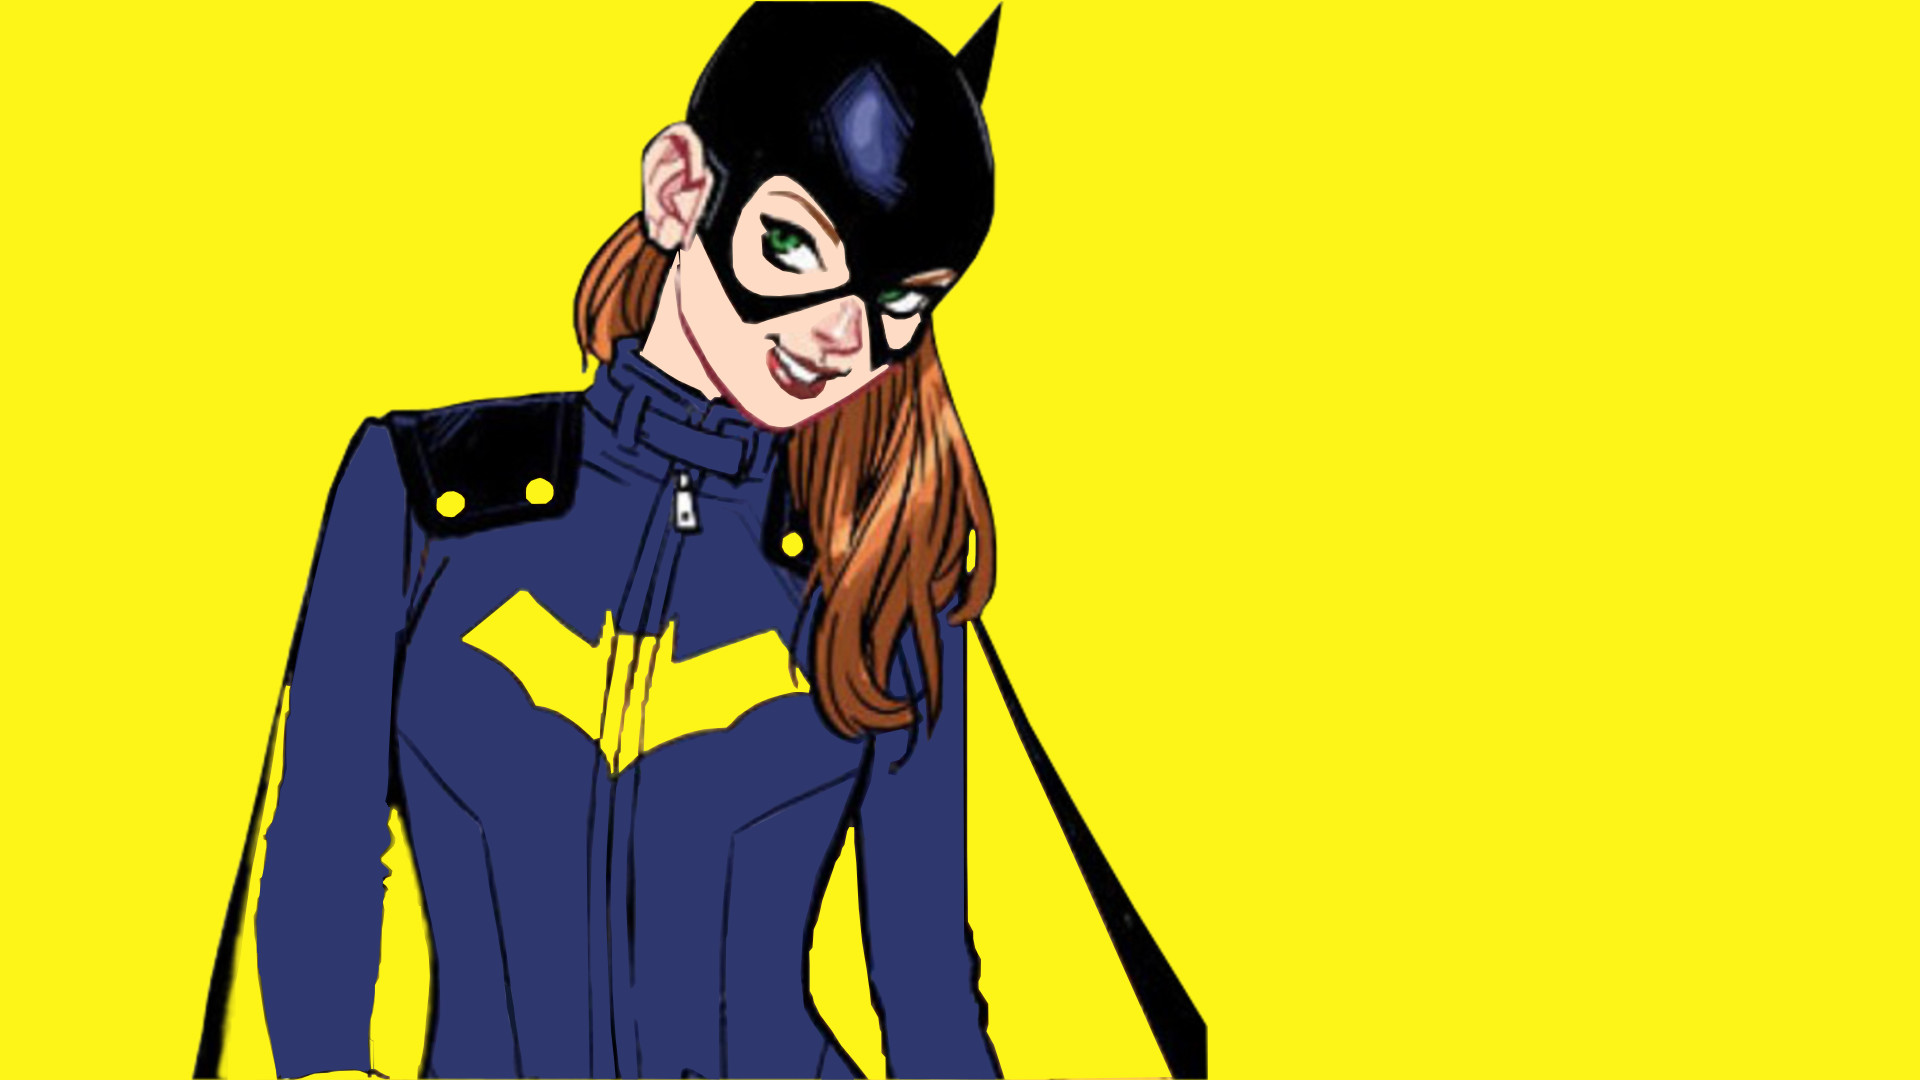 batgirl wallpaper,fictional character,yellow,cartoon,superhero,batman  (#689333) - WallpaperUse